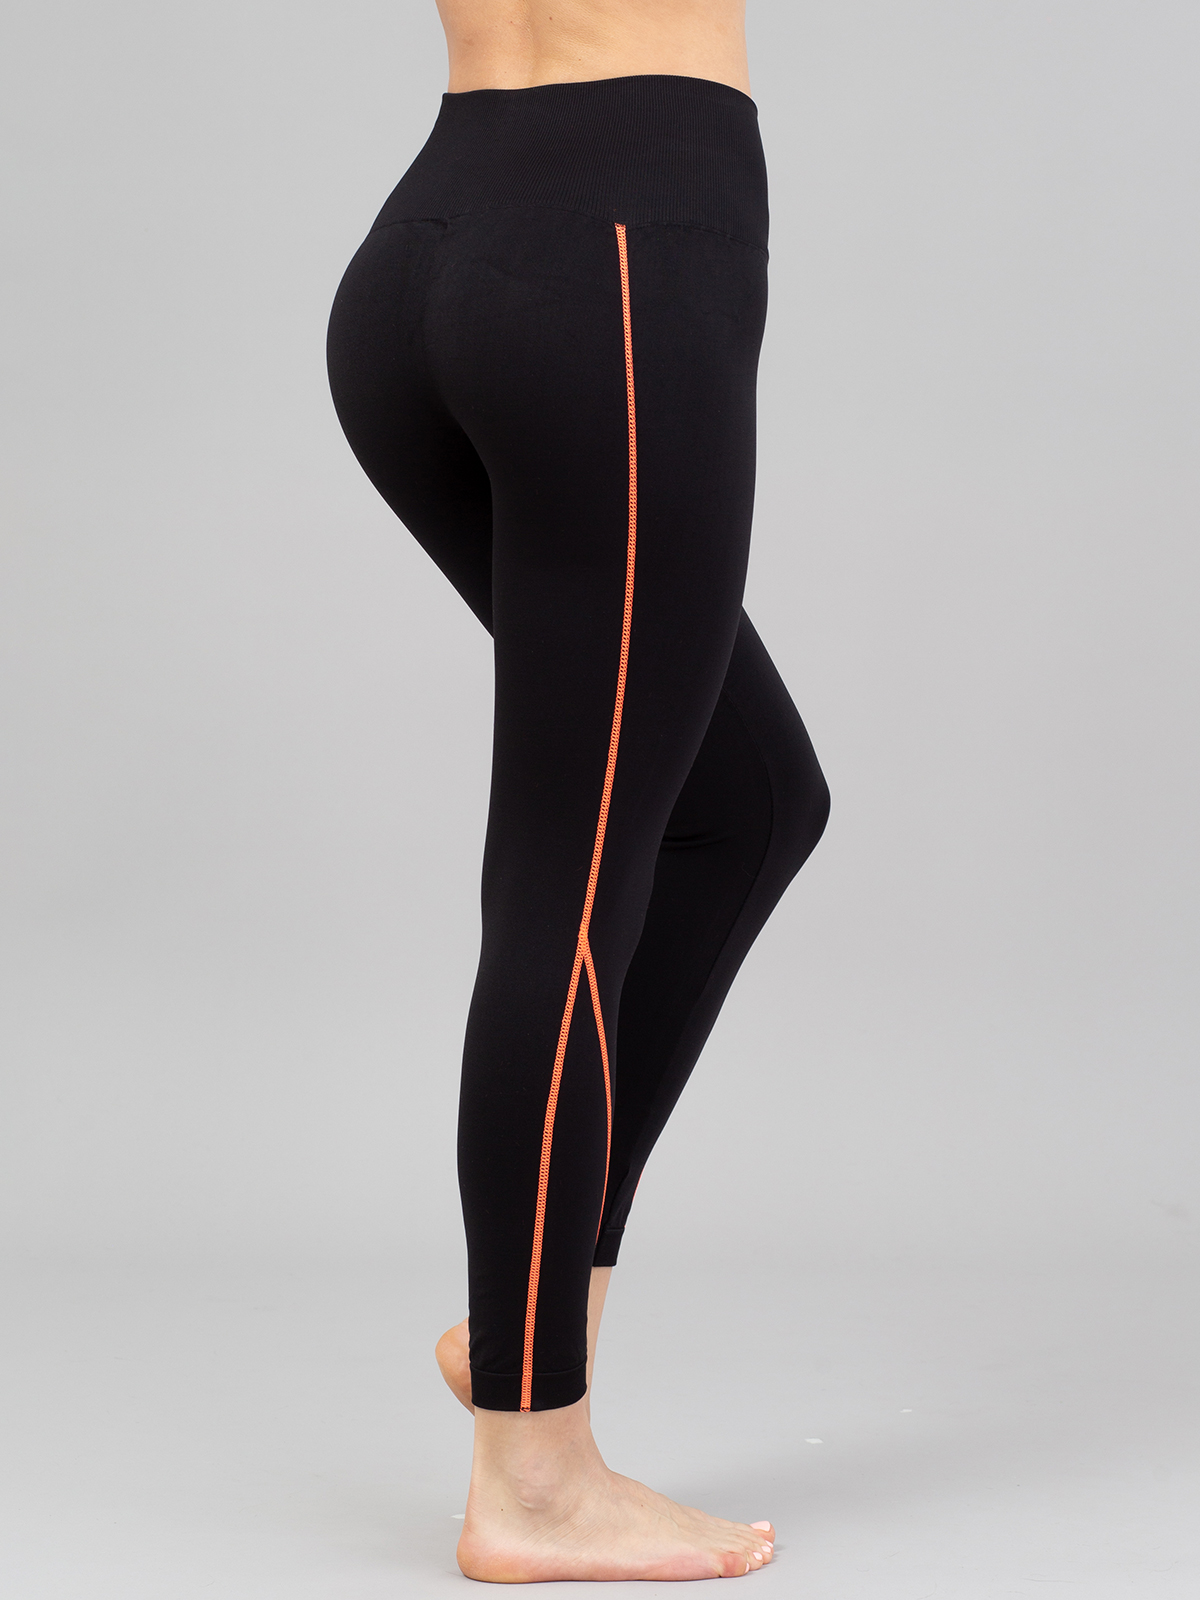 фото Спортивные леггинсы женские giulia leggings neon stripe 01 оранжевые s/m